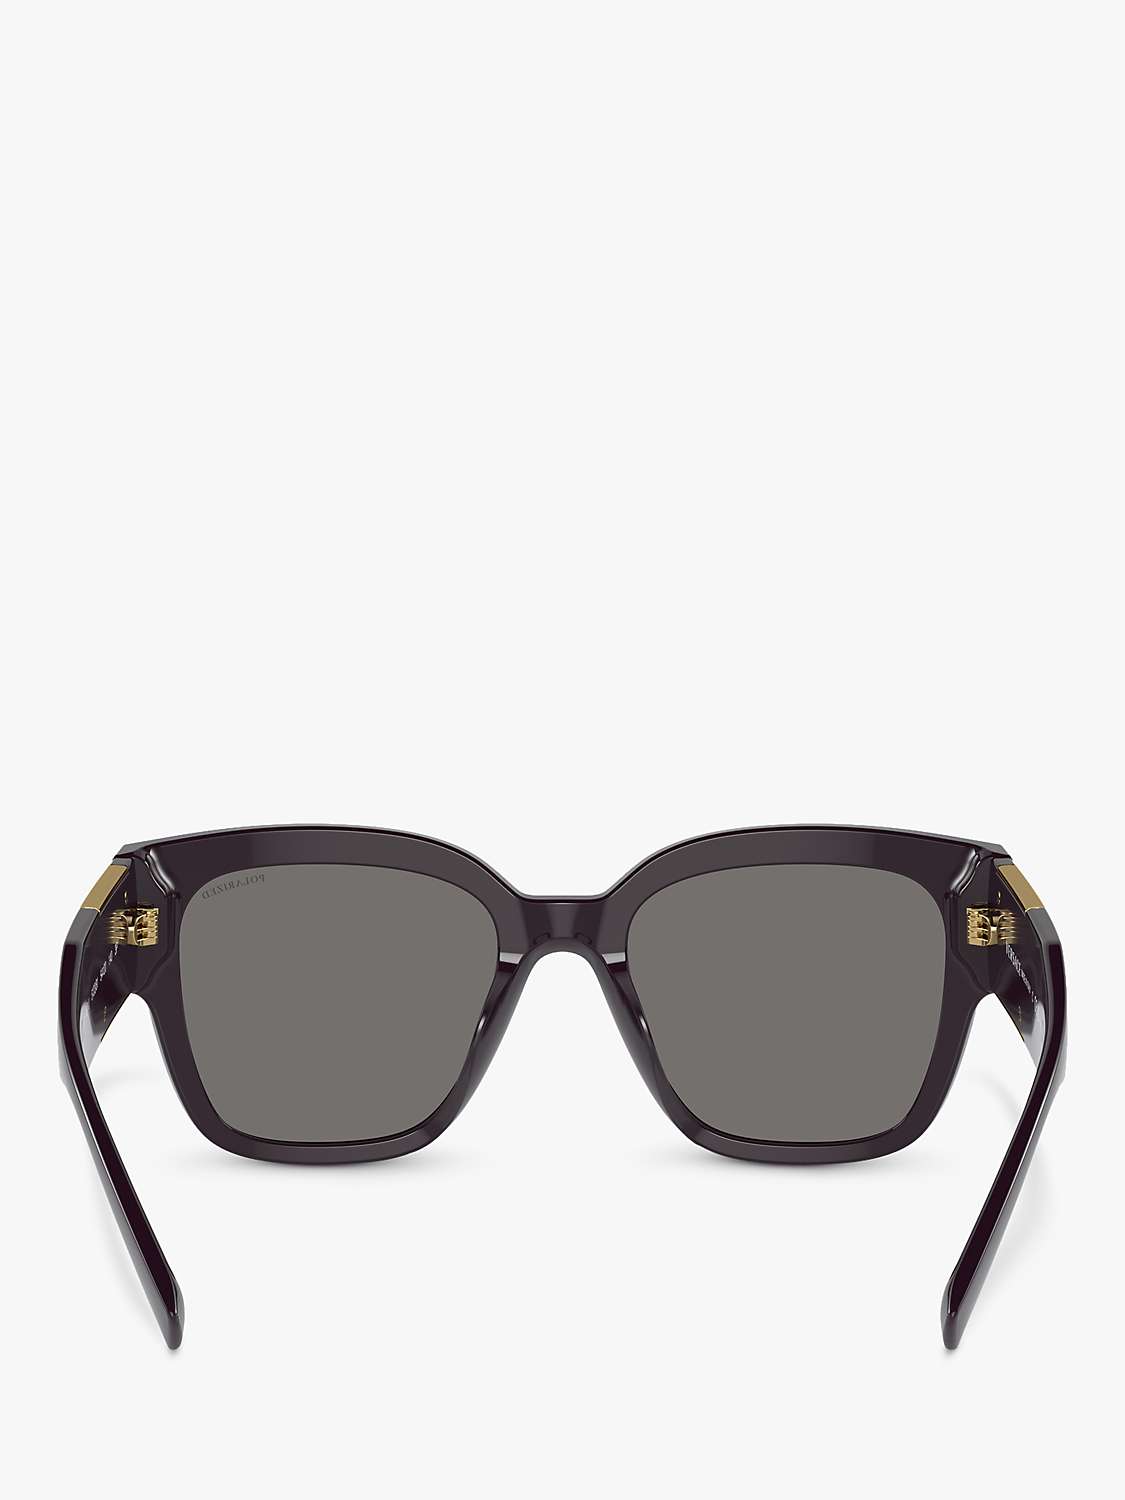 Buy Versace VE4437U Women's Pillow Sunglasses, Bordeaux Online at johnlewis.com